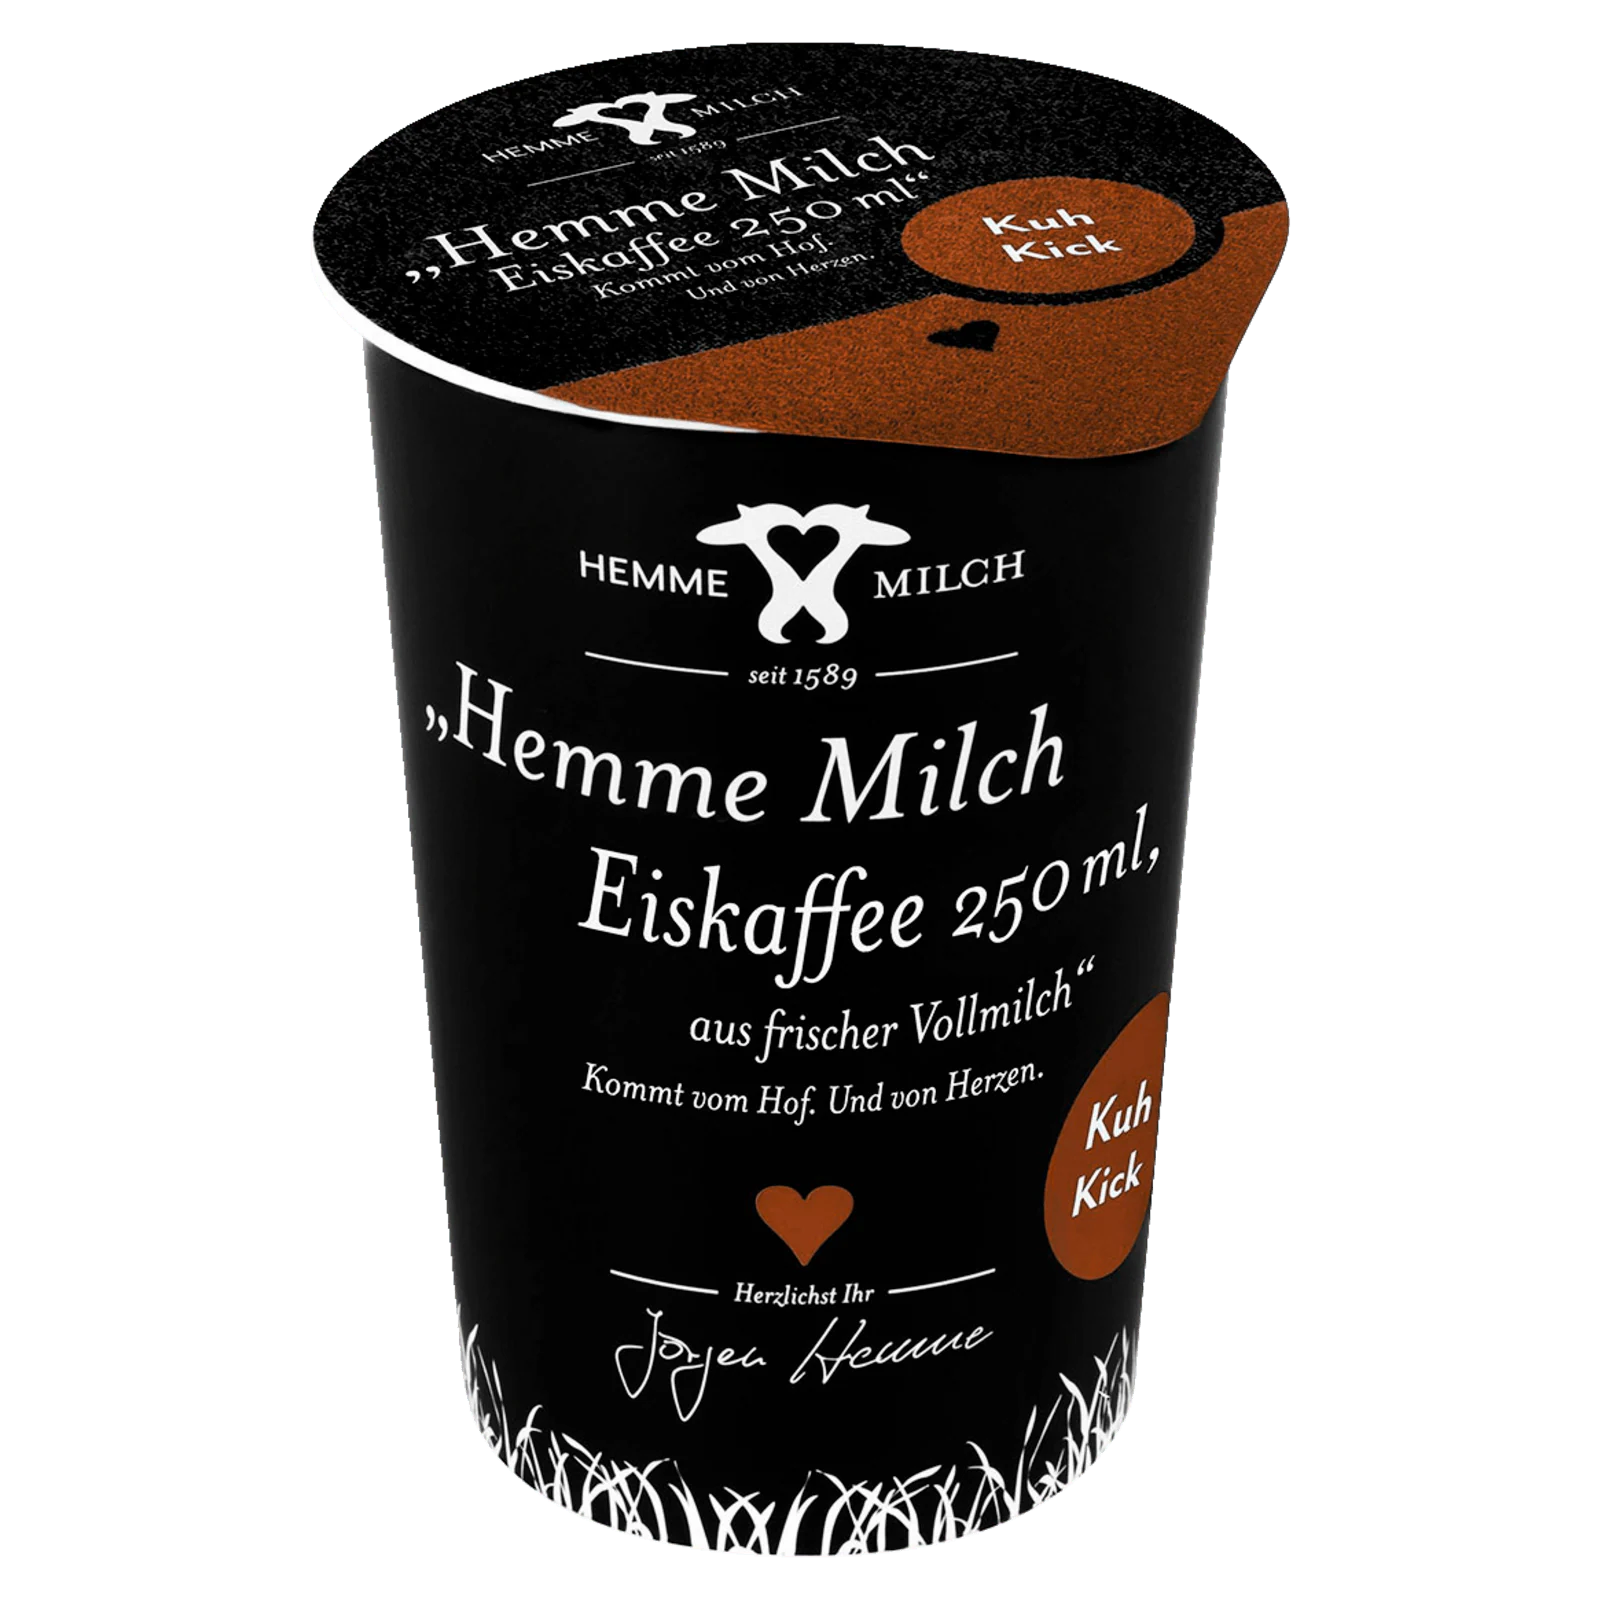 Hemme Milch Eiskaffee 250g  für 1.09 EUR